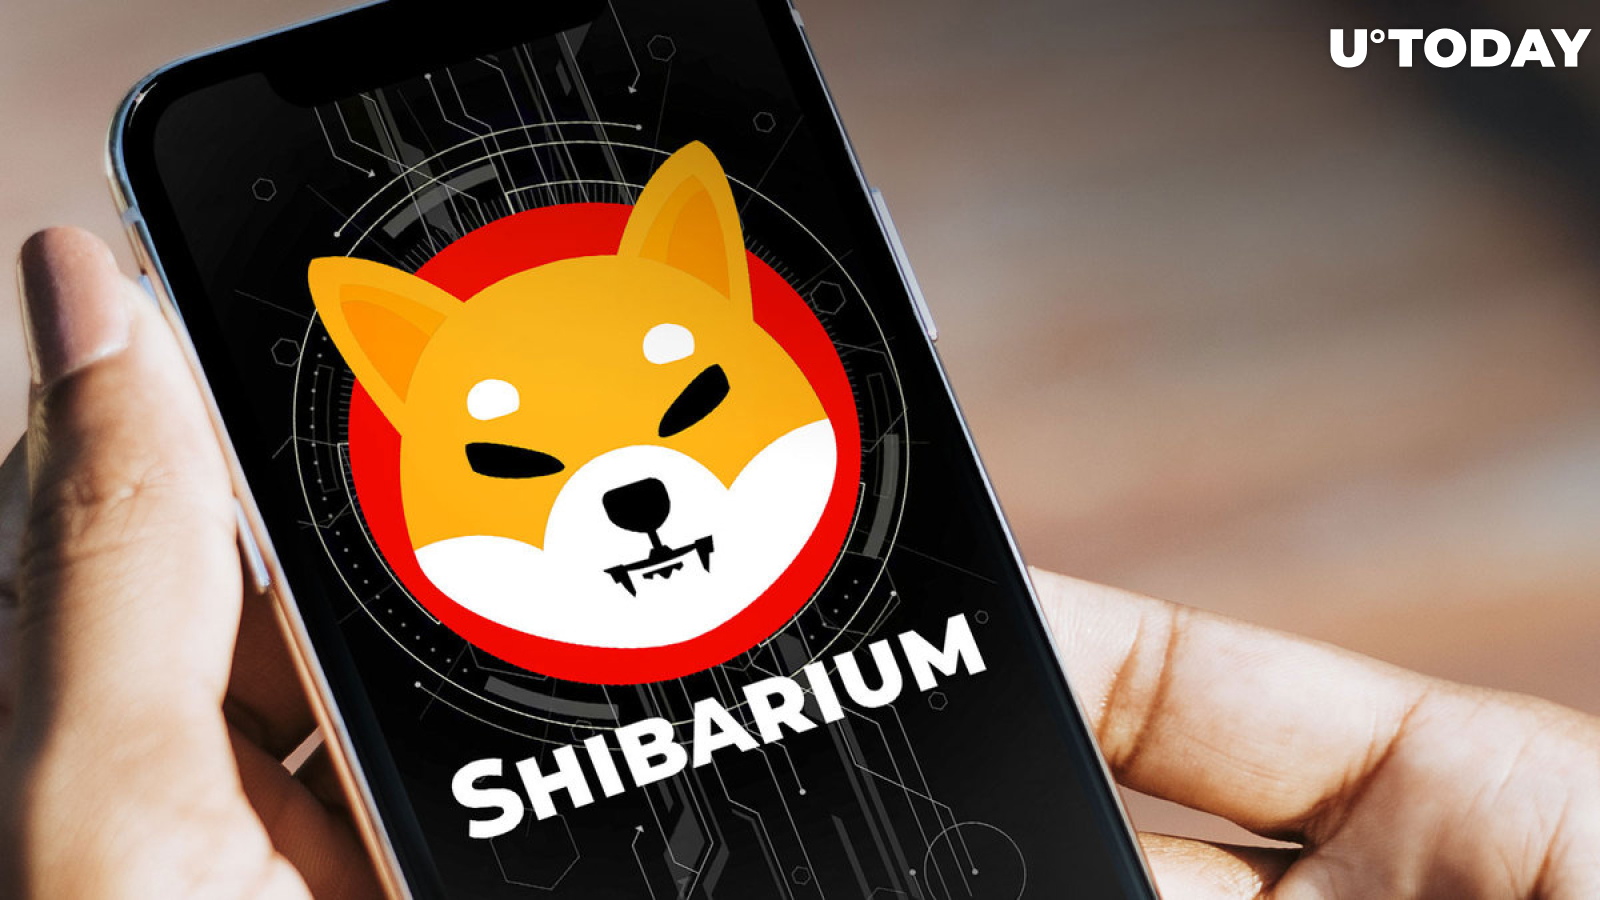 SHIB Lead Shytoshi Kusama Issues Enigmatic Post in Shibarium Channel